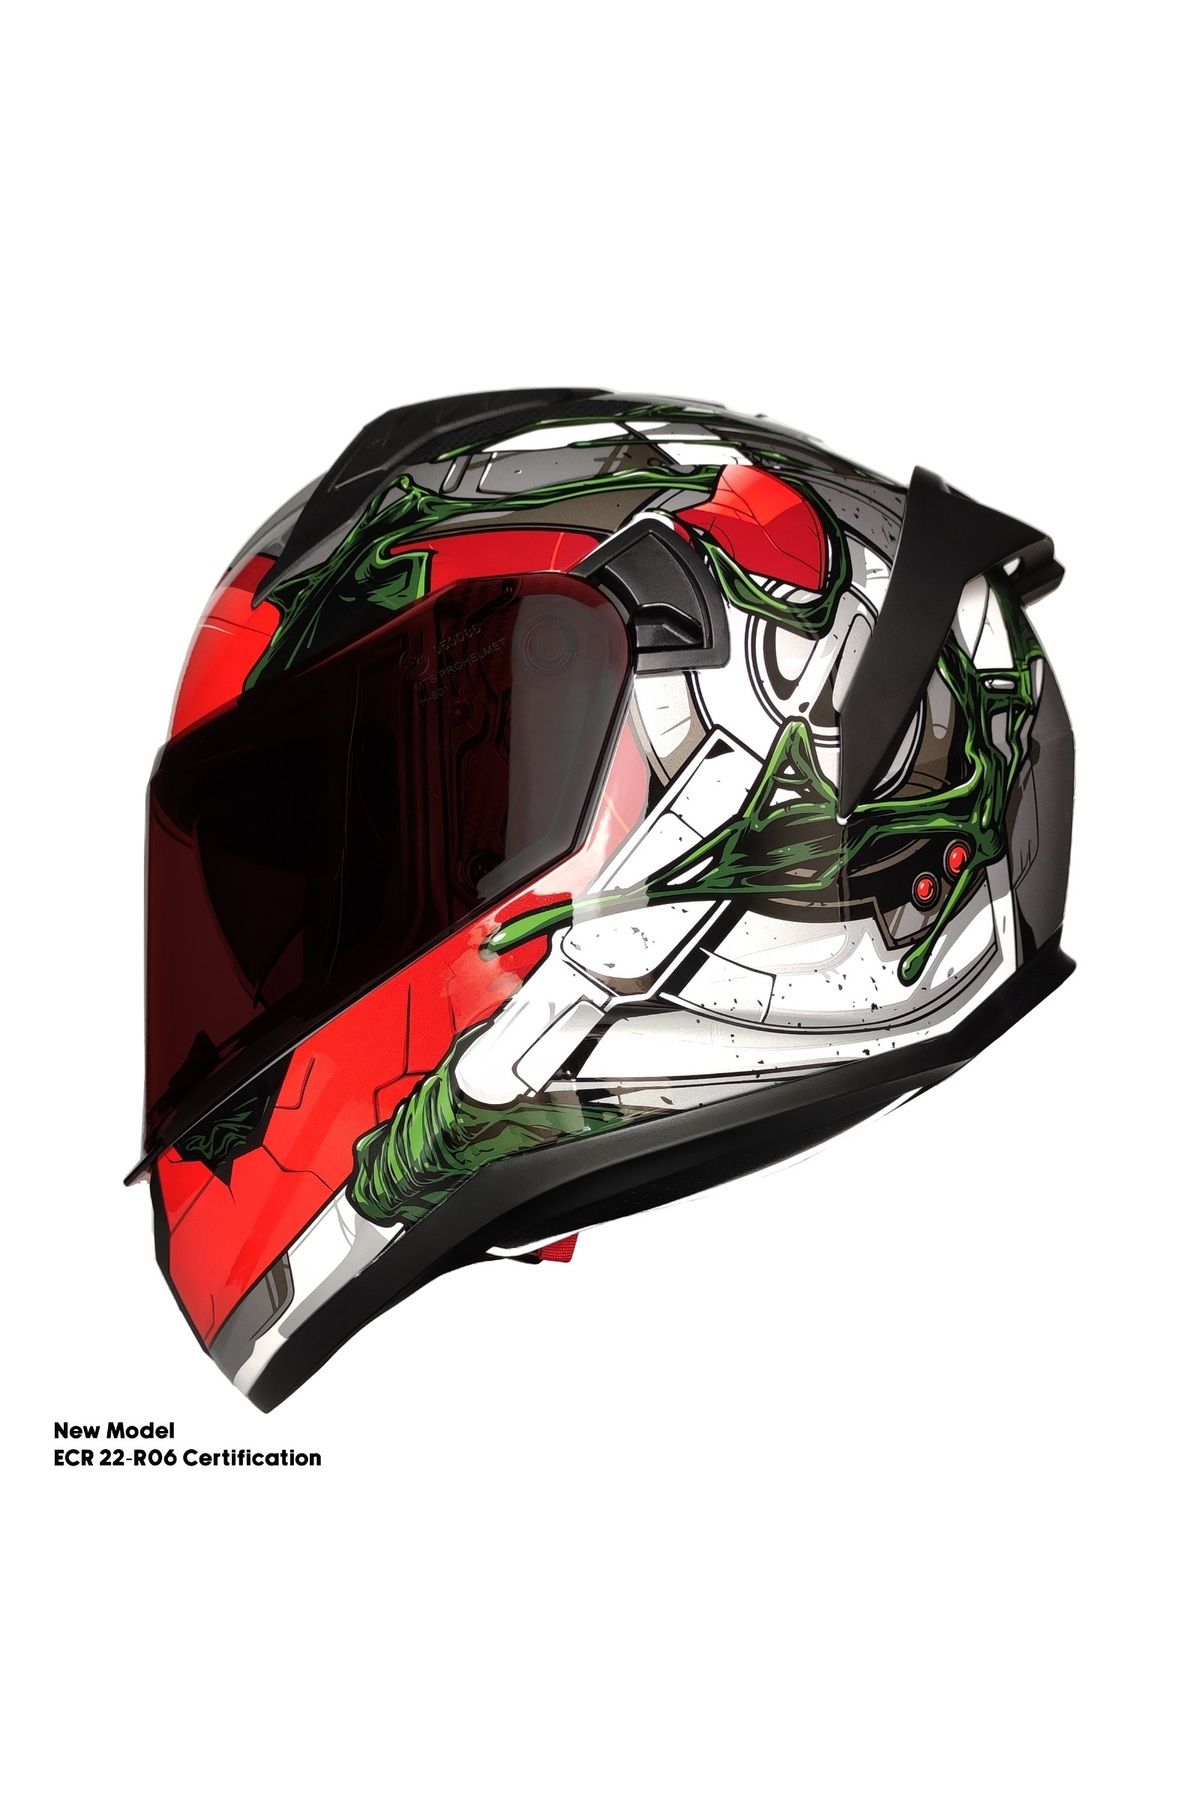 MOTOANL Motosiklet Kask Ece 22.R06 Sertifikalı Double Vizör Fiber Motor Kaskı Full Face Yeni Sezon WAR